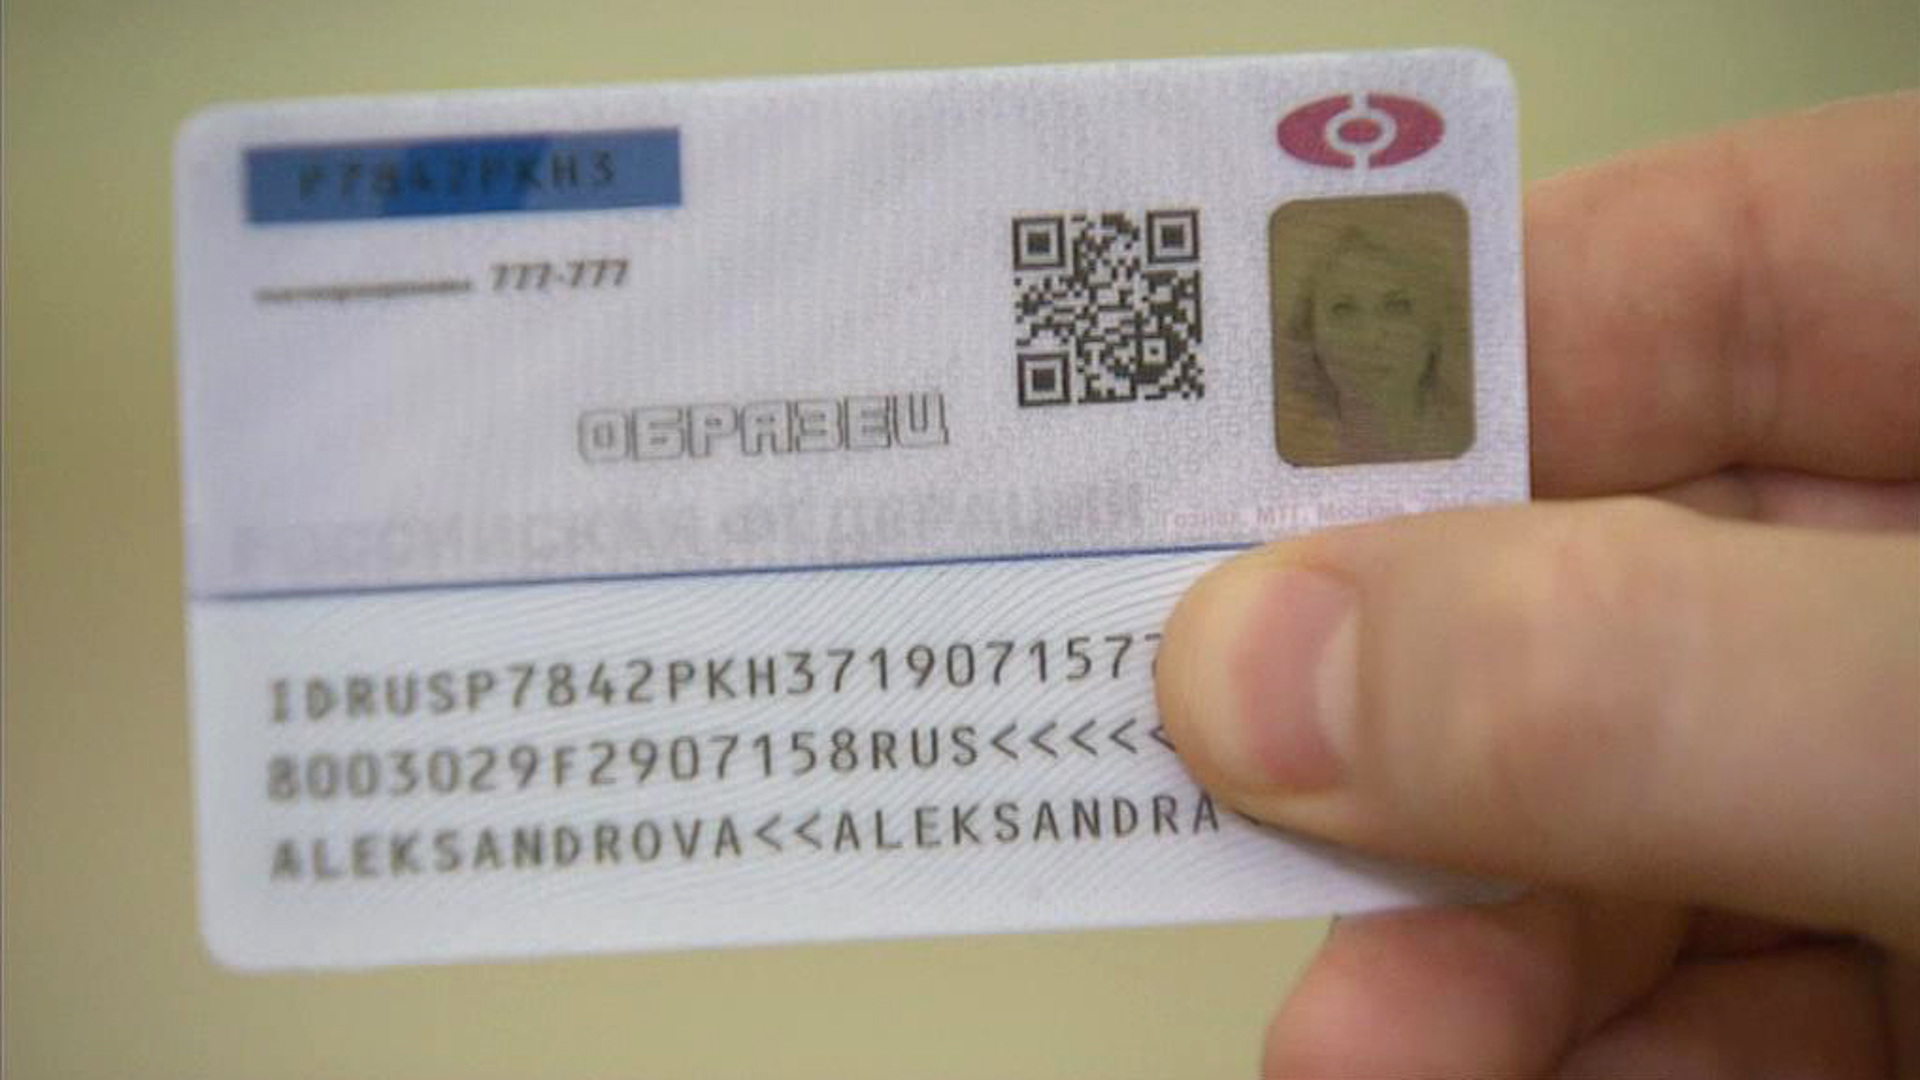 Цифровой паспорт объекта станет единственным источником информации